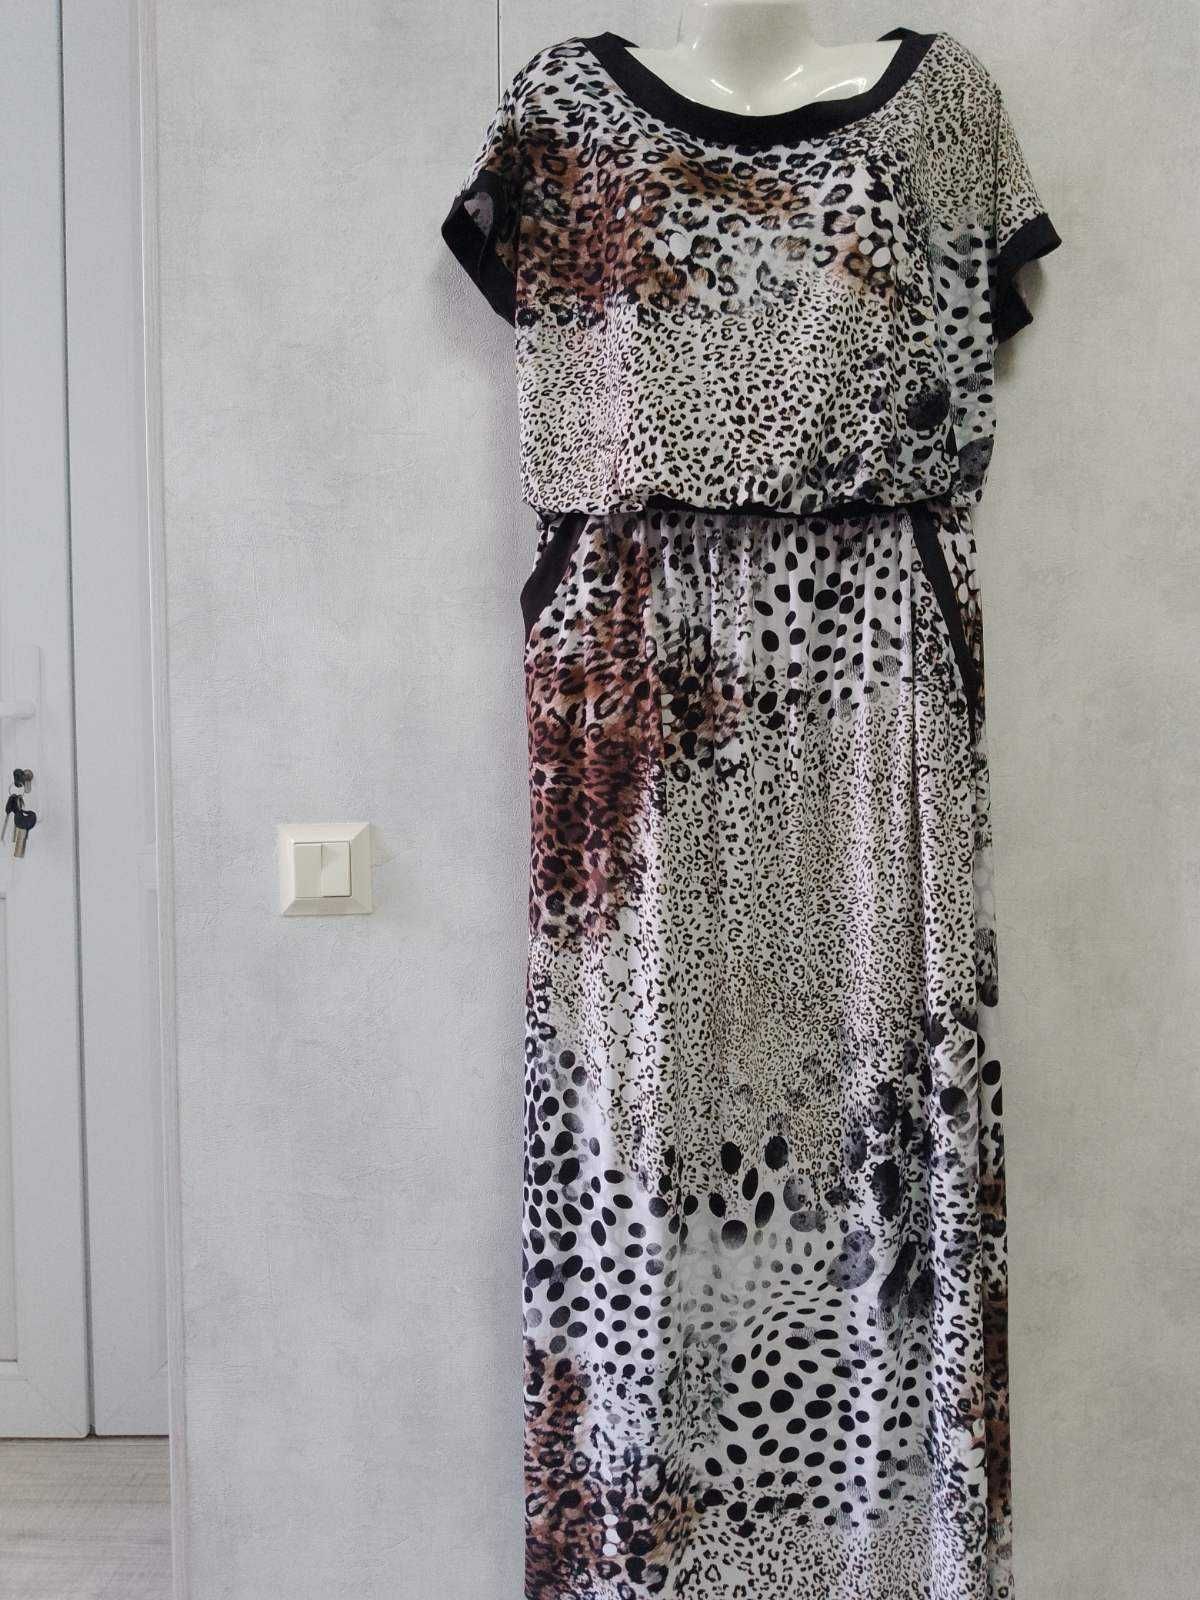 Леопардовое платье модель Макси .Трикотаж-масло . Размер 52-54